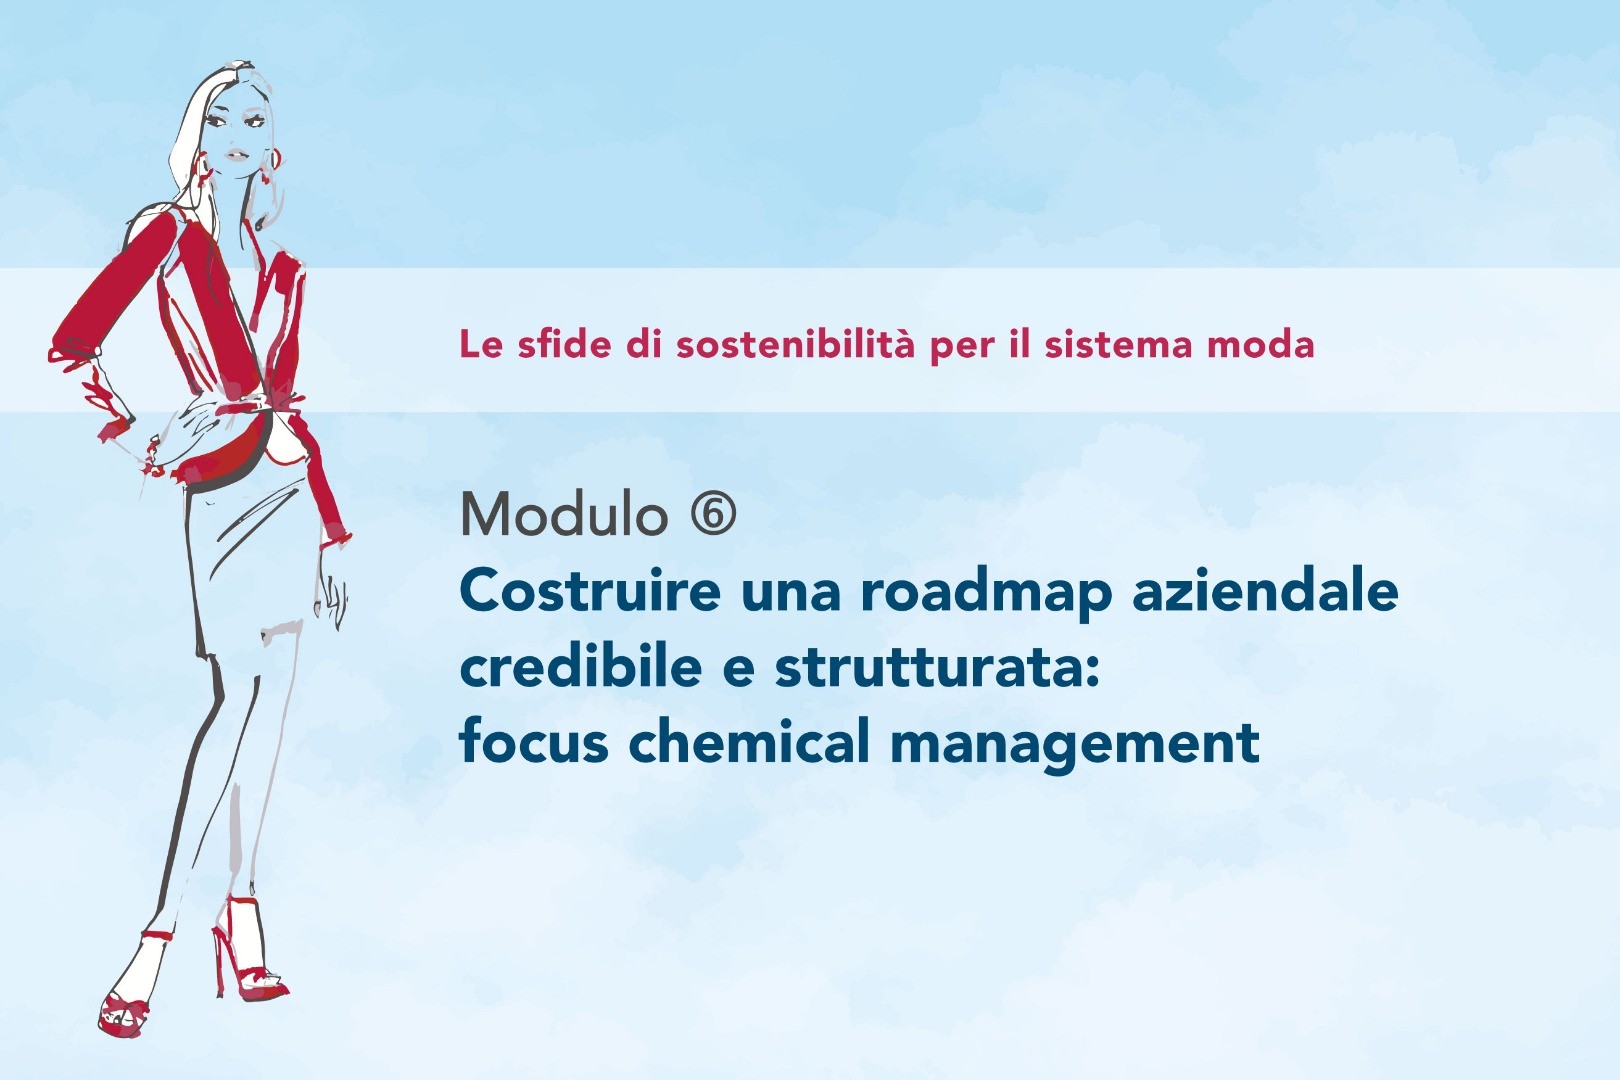 Modulo 6 - Costruire una roadmap aziendale credibile e strutturata: focus Chemical Management